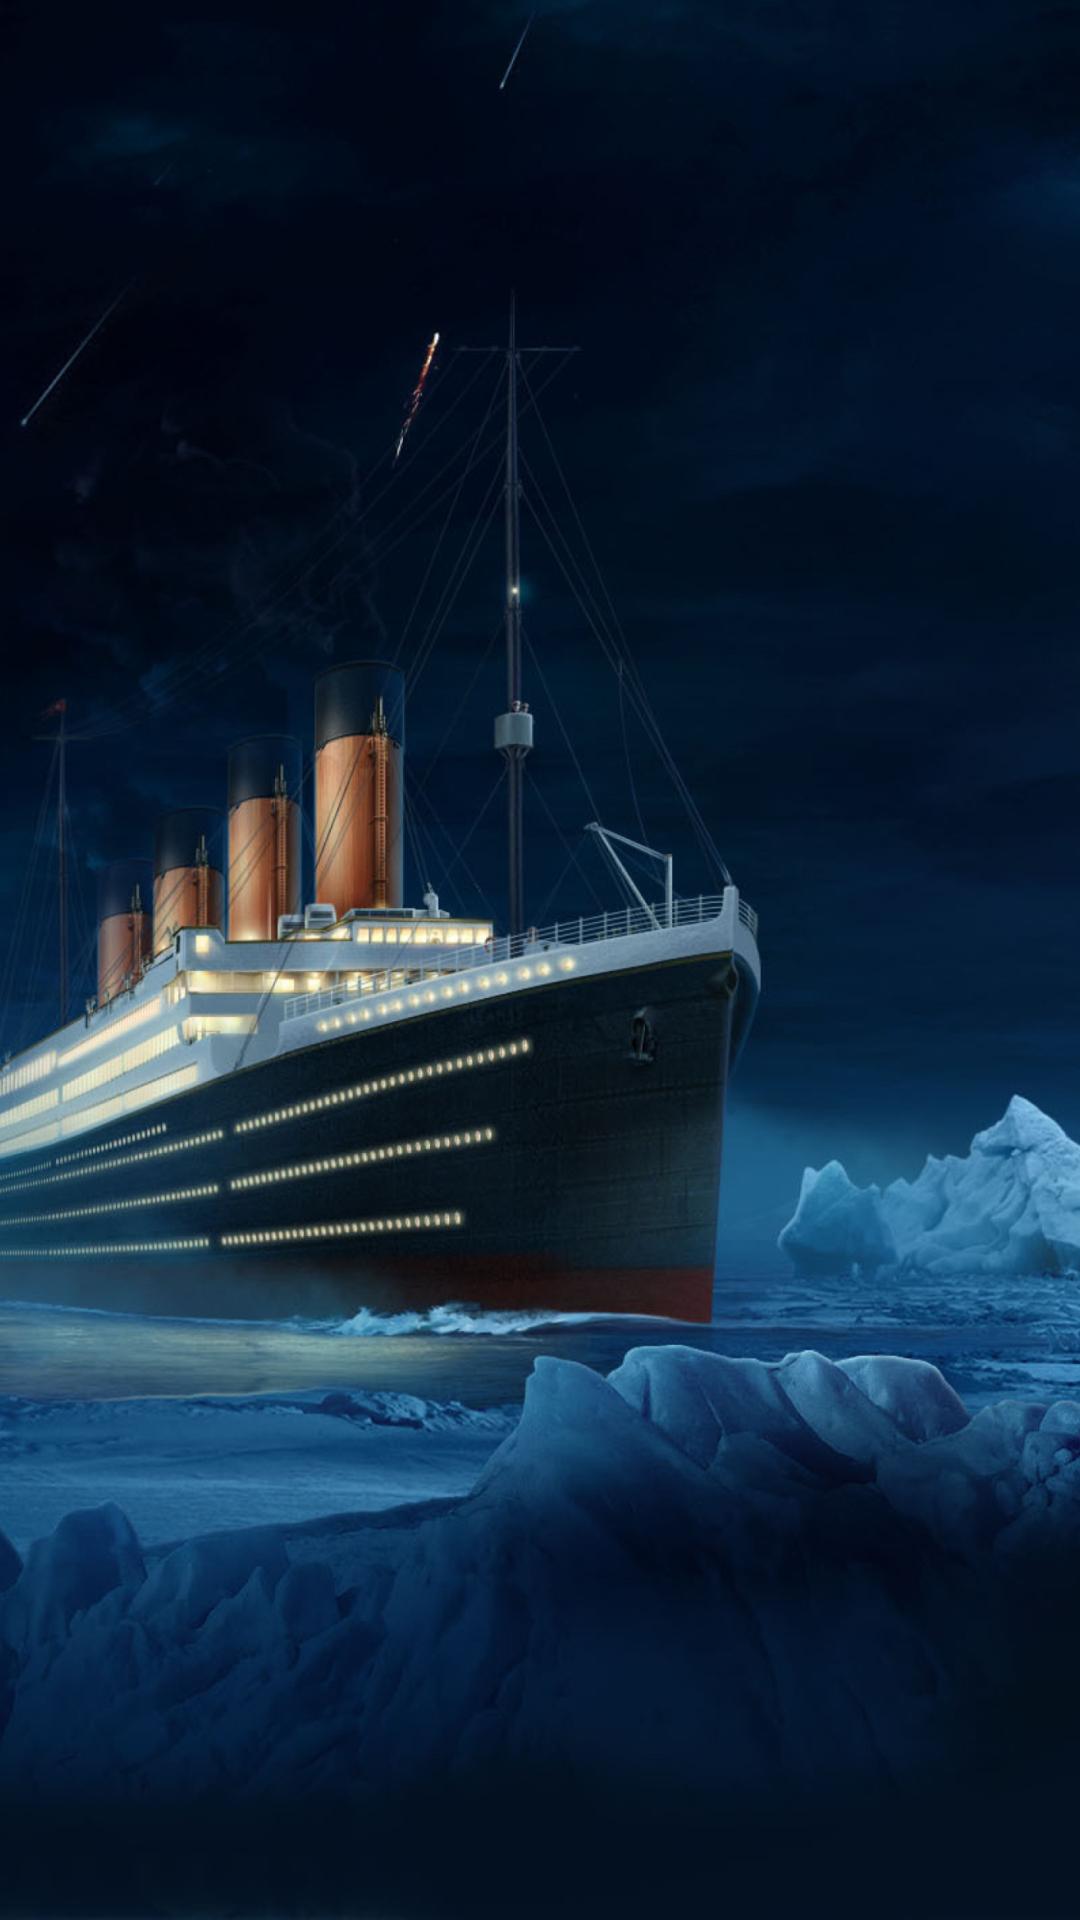 Hình nền Nền Tàu Titanic Trên đại Dương Nền, Hình ảnh Thực Tế Titanic,  Titan, Titanic Background Vector để tải xuống miễn phí - Pngtree